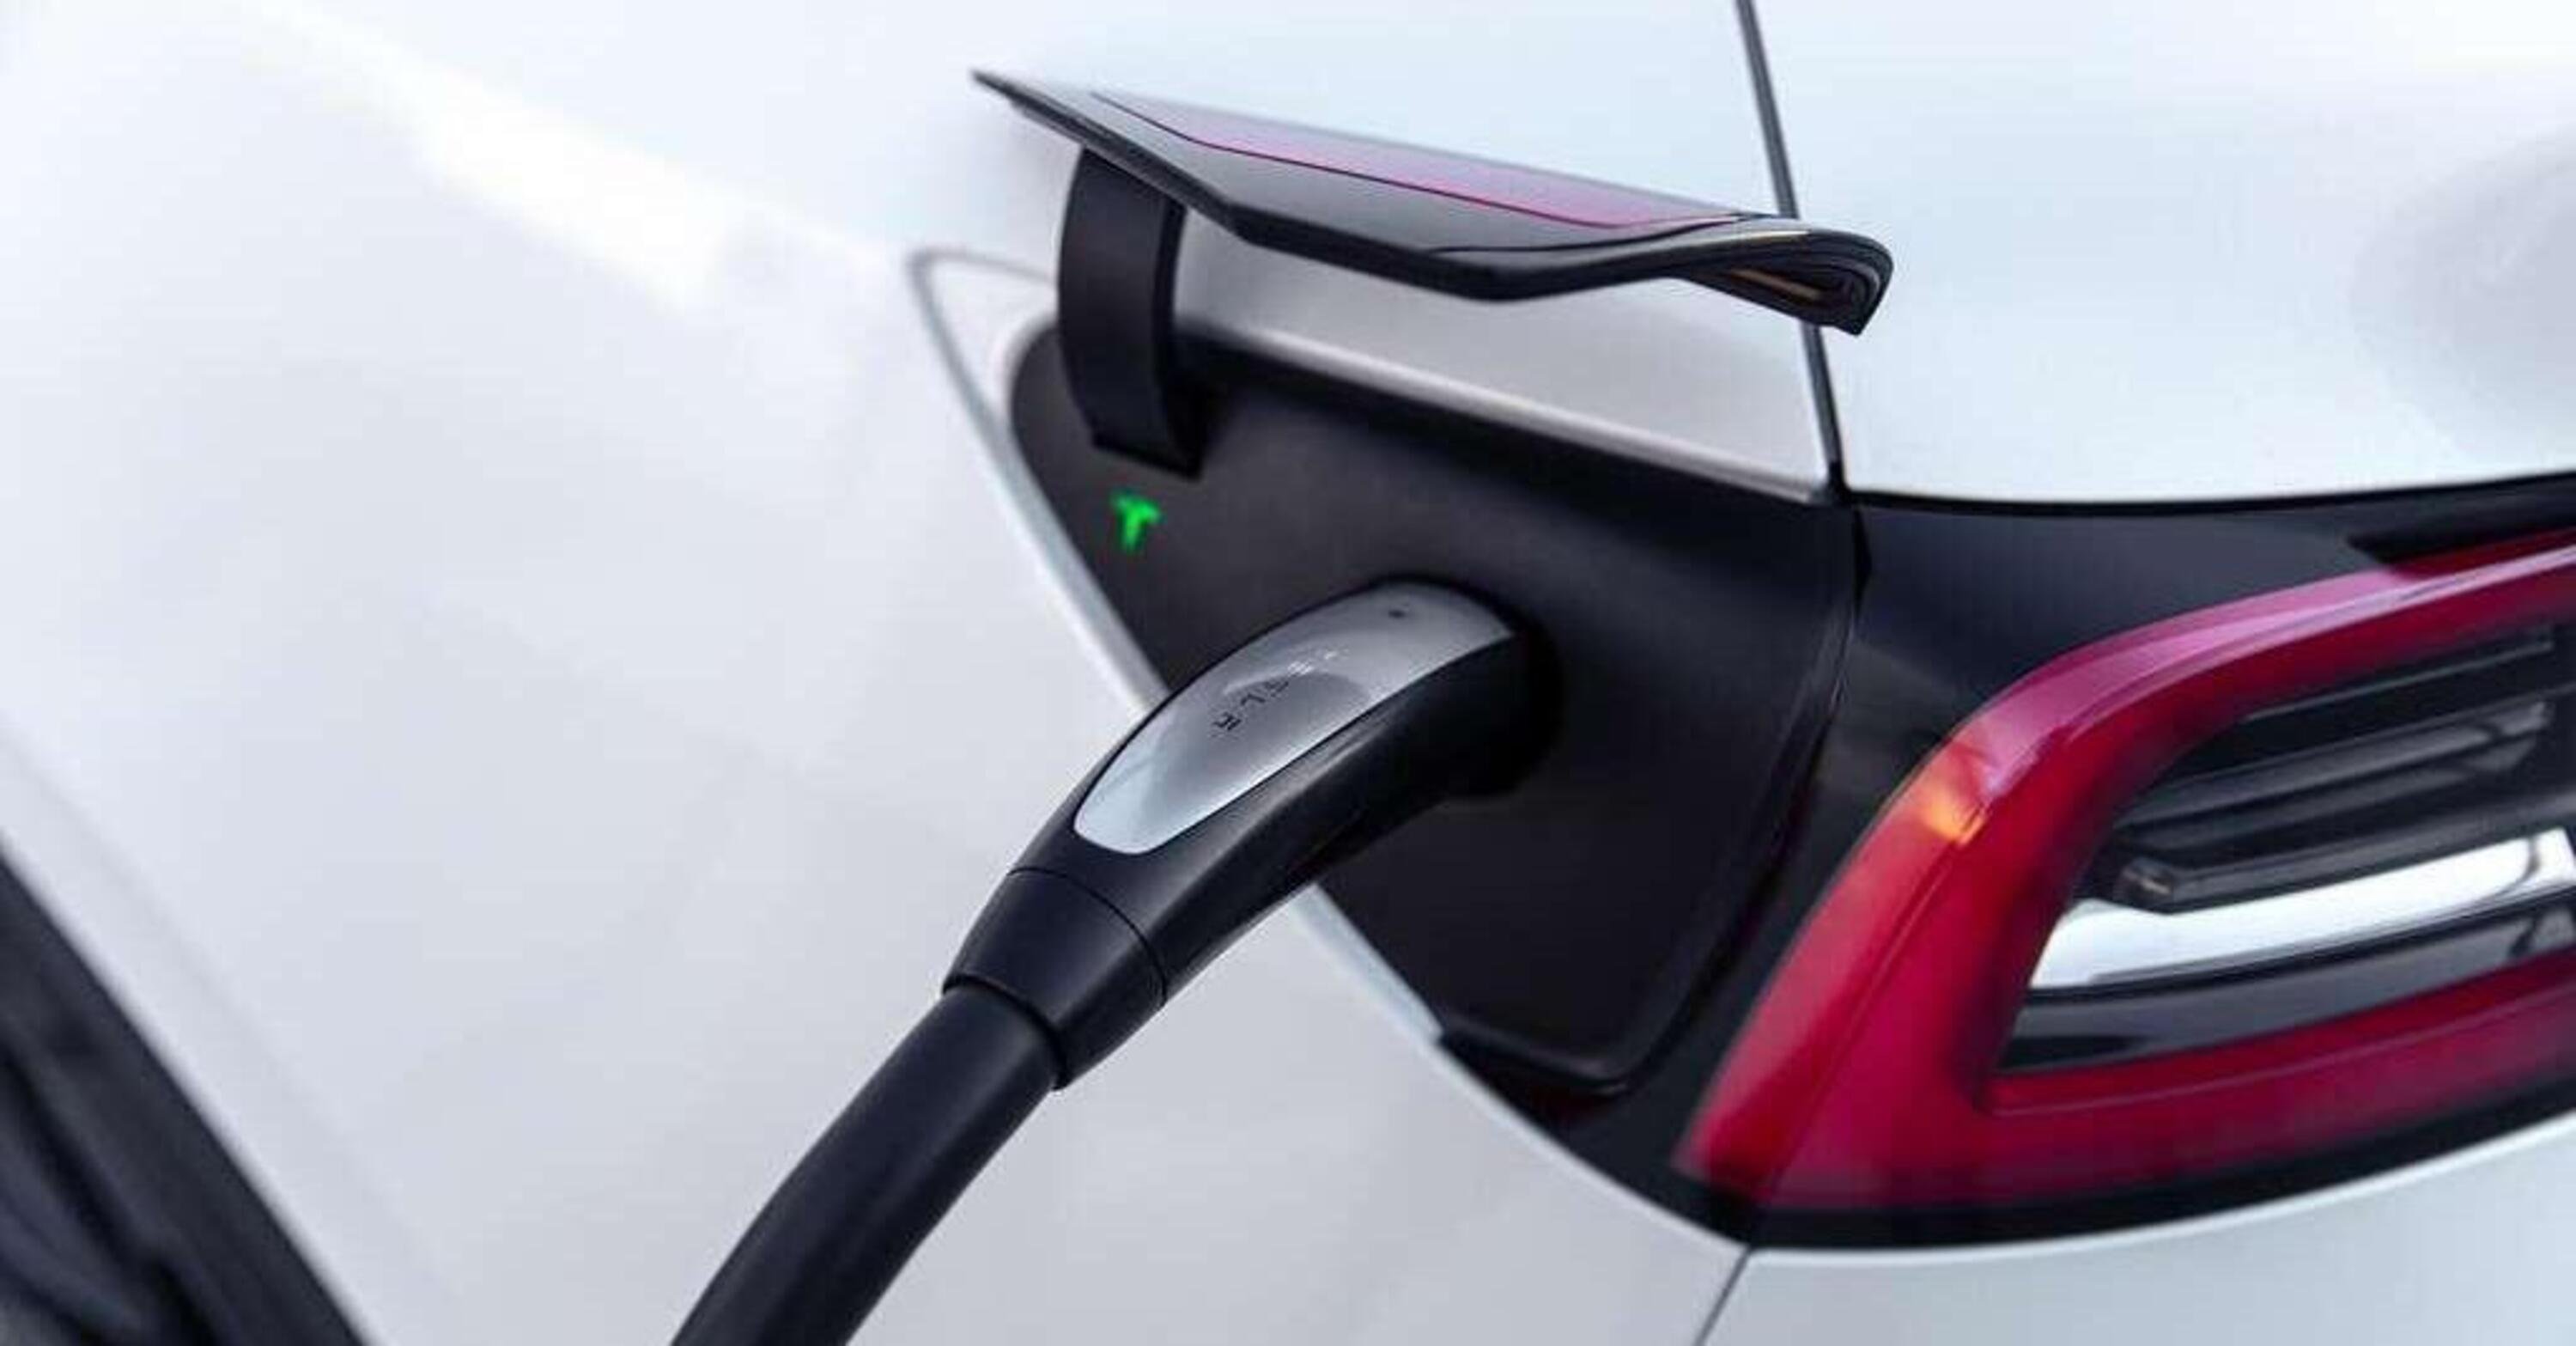 Supercharger di Tesla aperti a tutte le auto elettriche: si parte dalla Francia